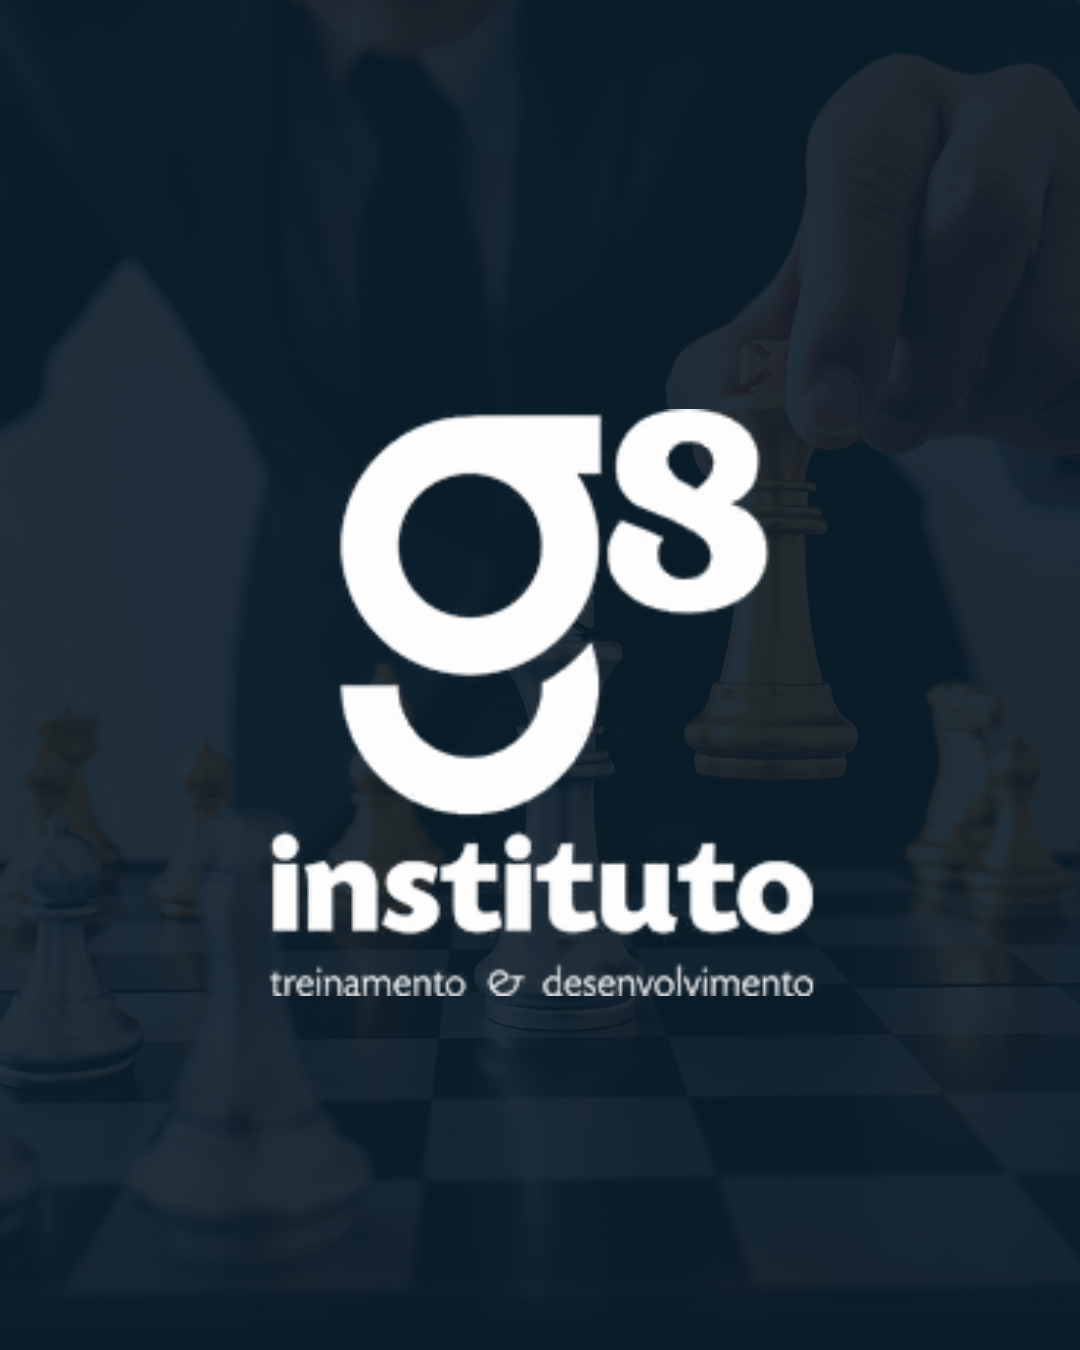 (c) Institutog8.com.br